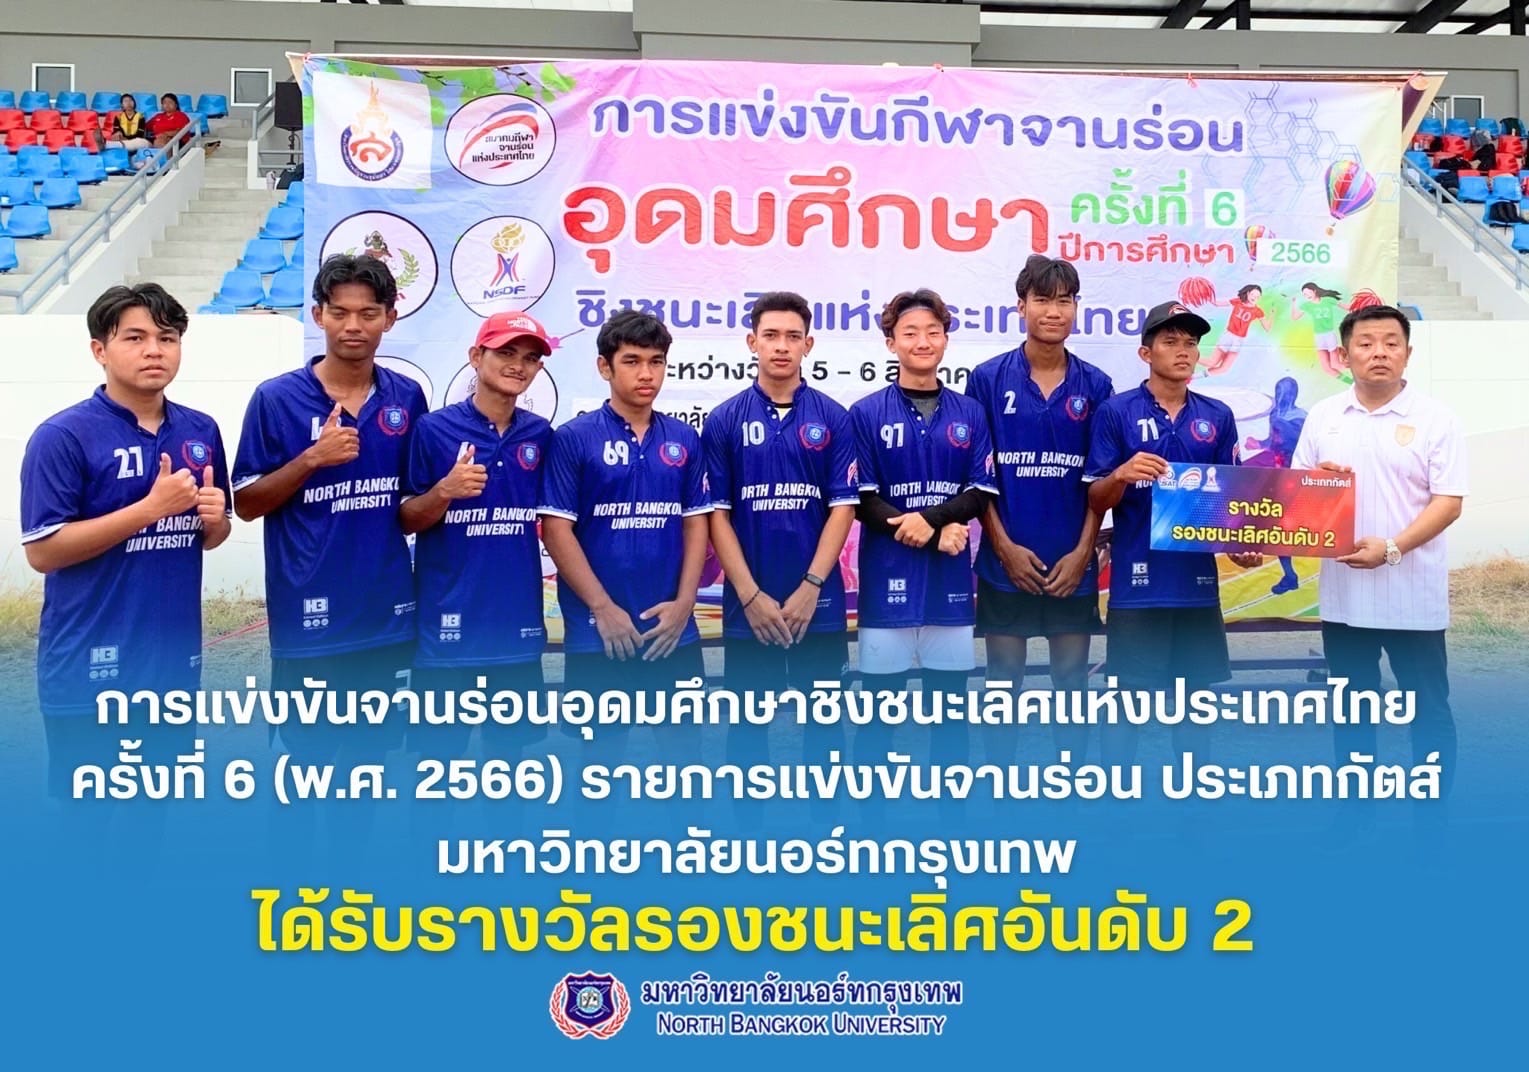 ทีมนักกีฬาจานร่อน คว้ารางวัลรองชนะเลิศอันดับที่ 2 การแข่งขันจานร่อนอุดมศึกษาชิงชนะเลิศแห่งประเทศไทย ครั้งที่ 6